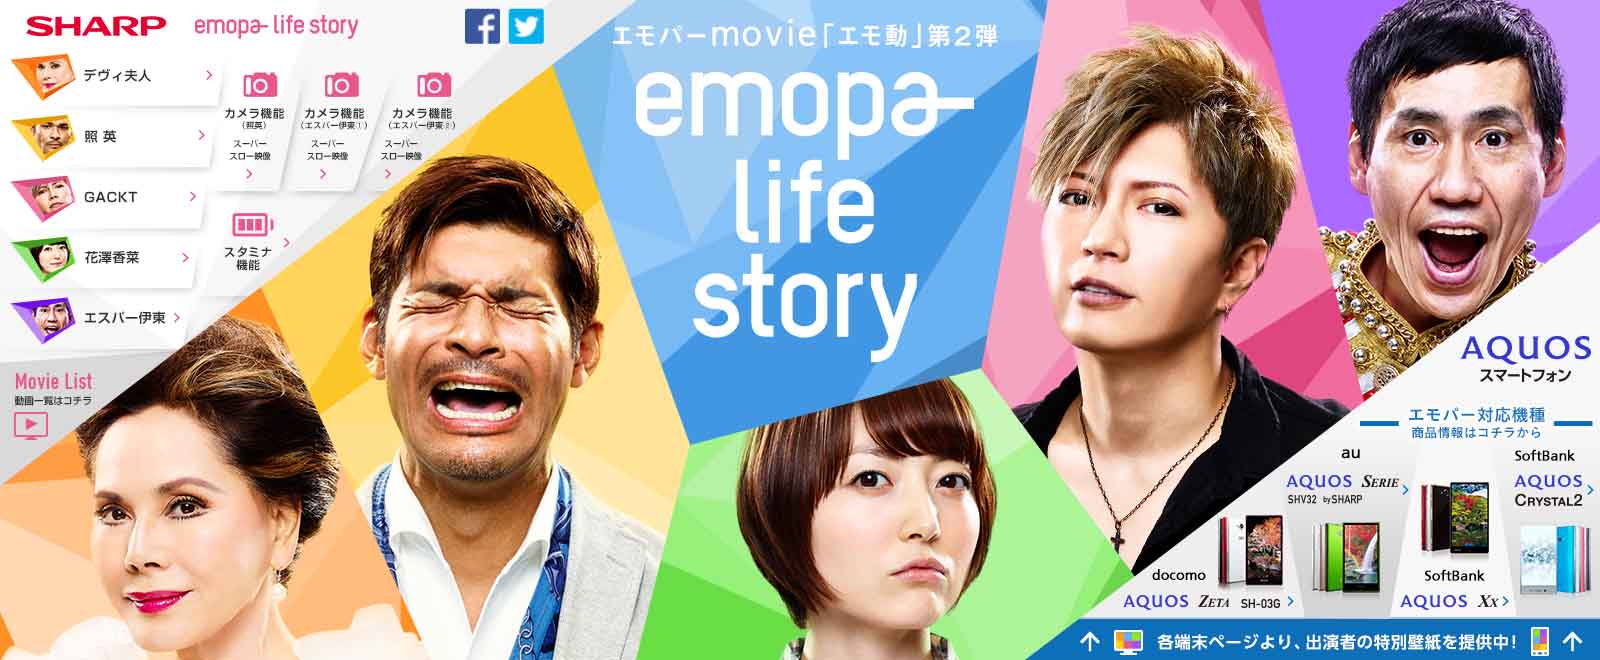 エモパーmovie「エモ動」Webサイト　<br />
emopa- life story